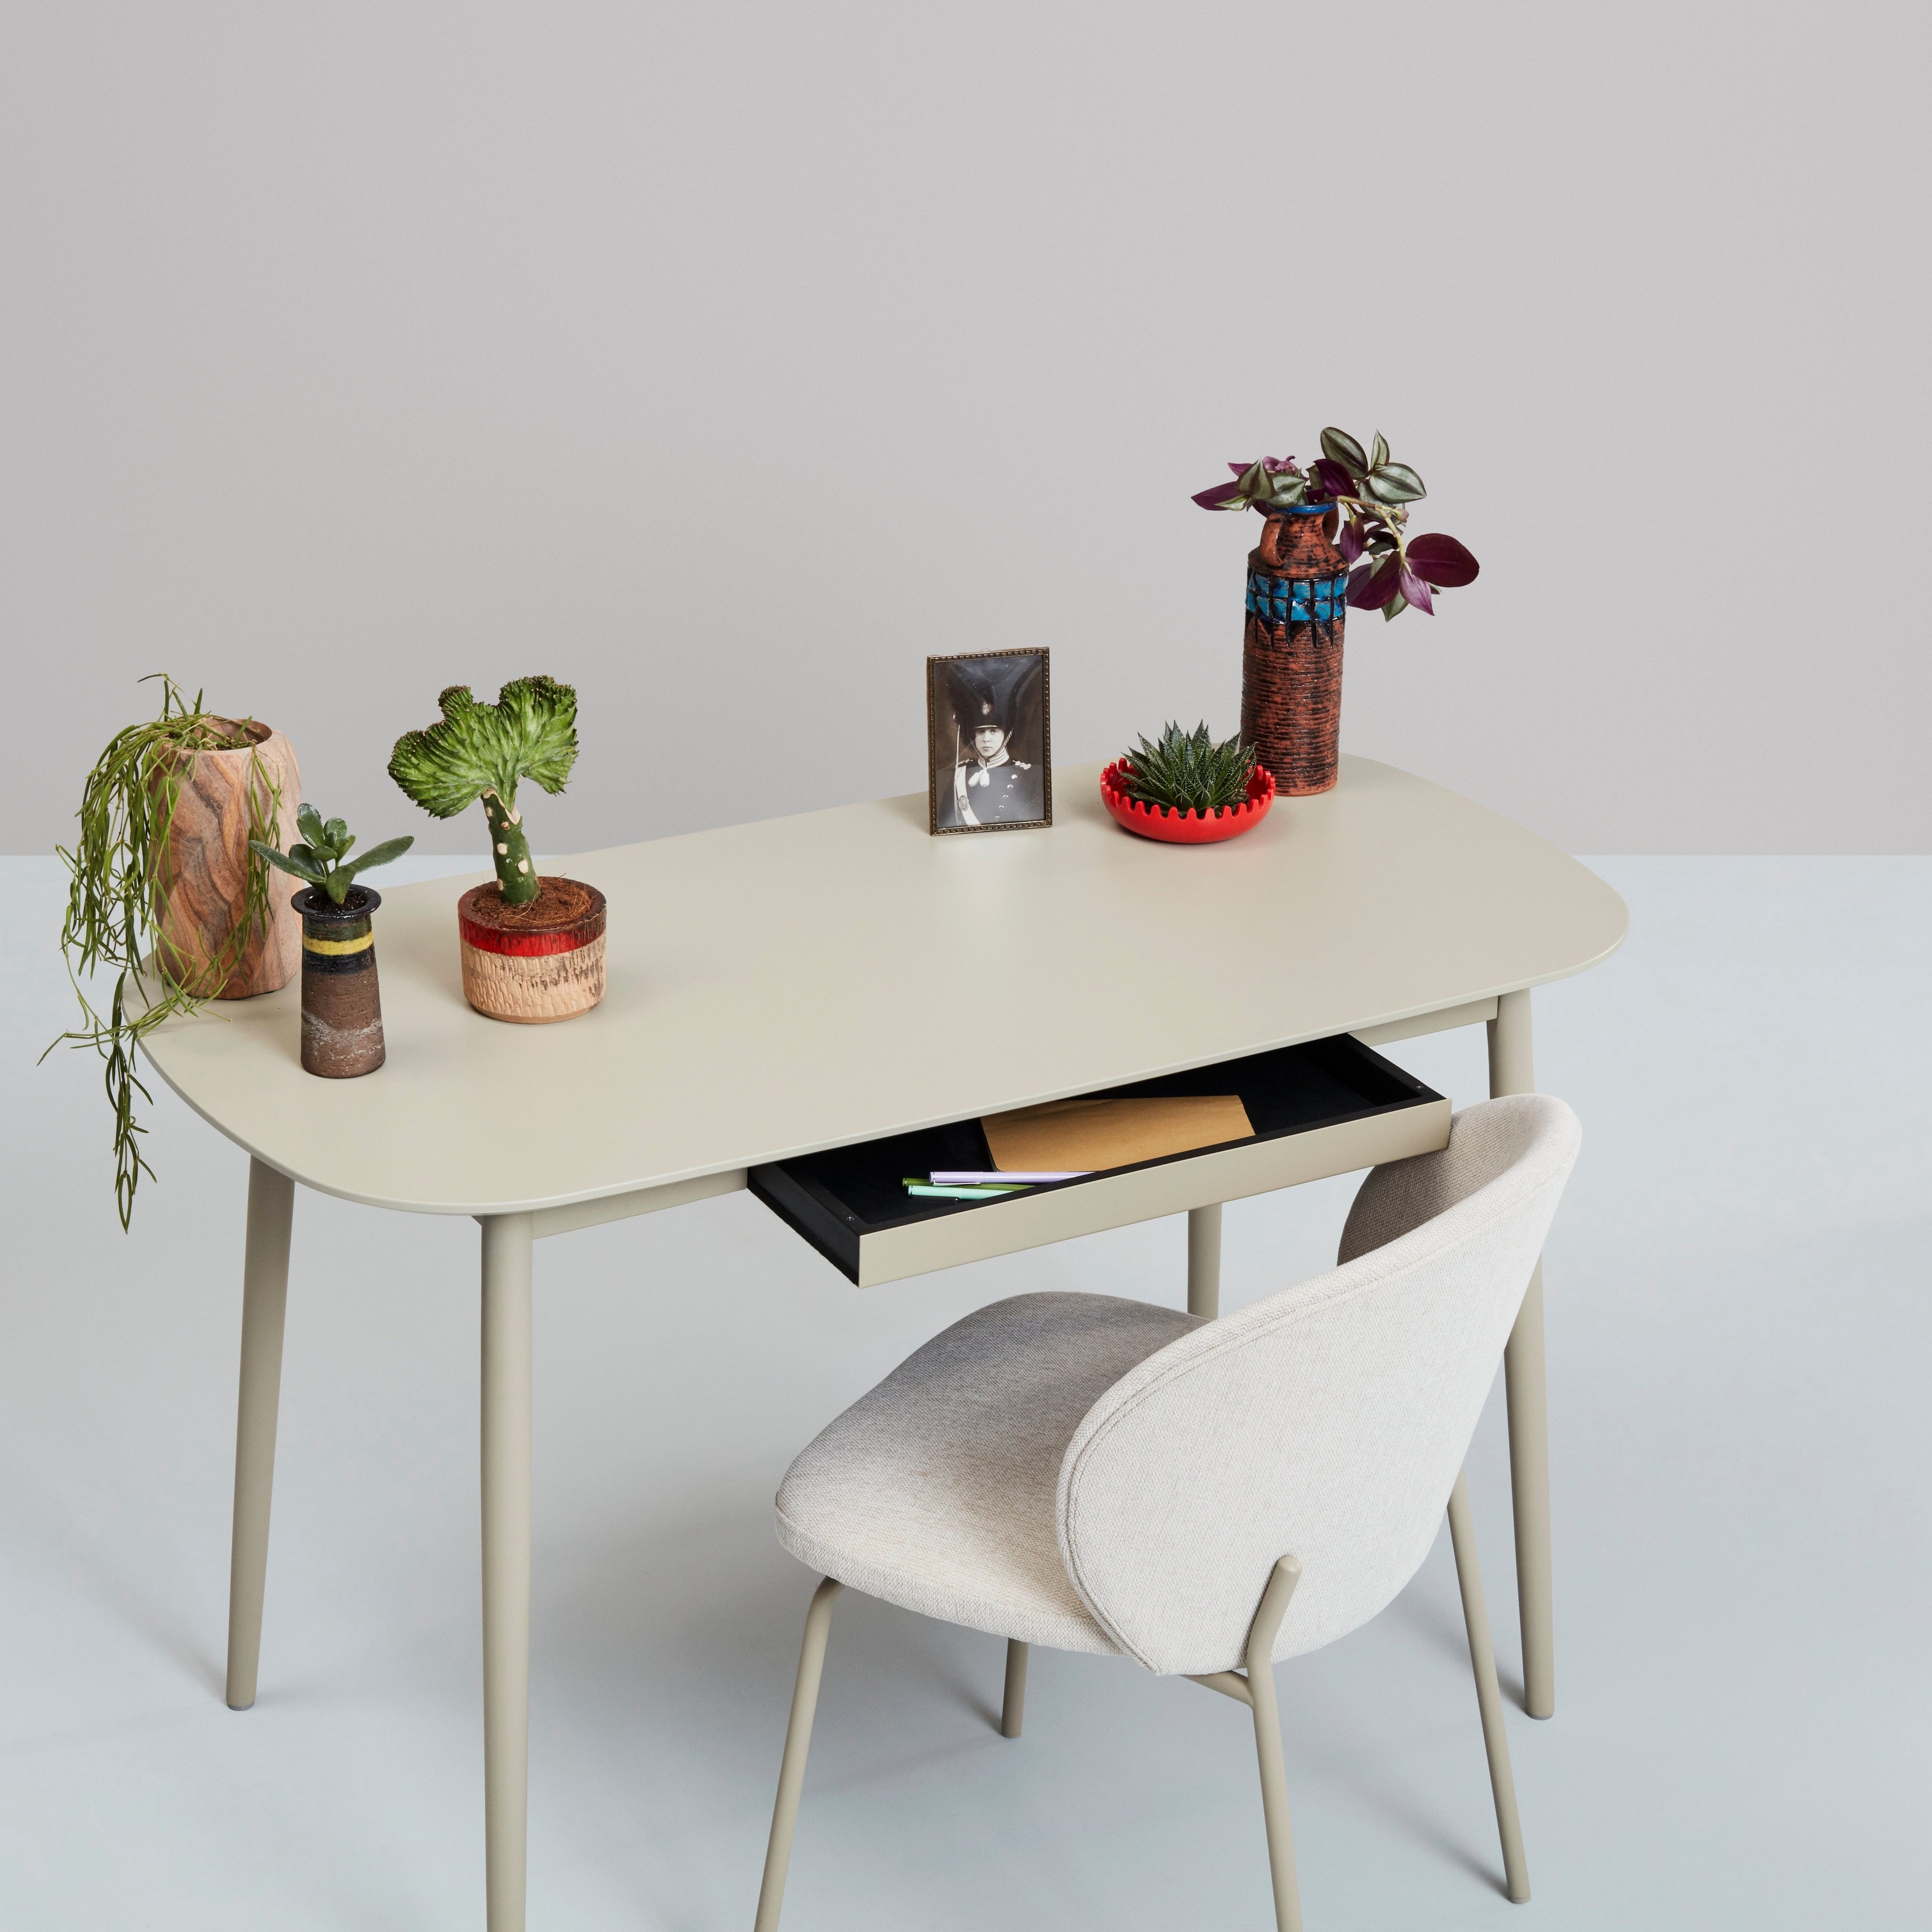 Escritorio blanco con plantas, artículos decorativos y una silla sobre un fondo neutro.